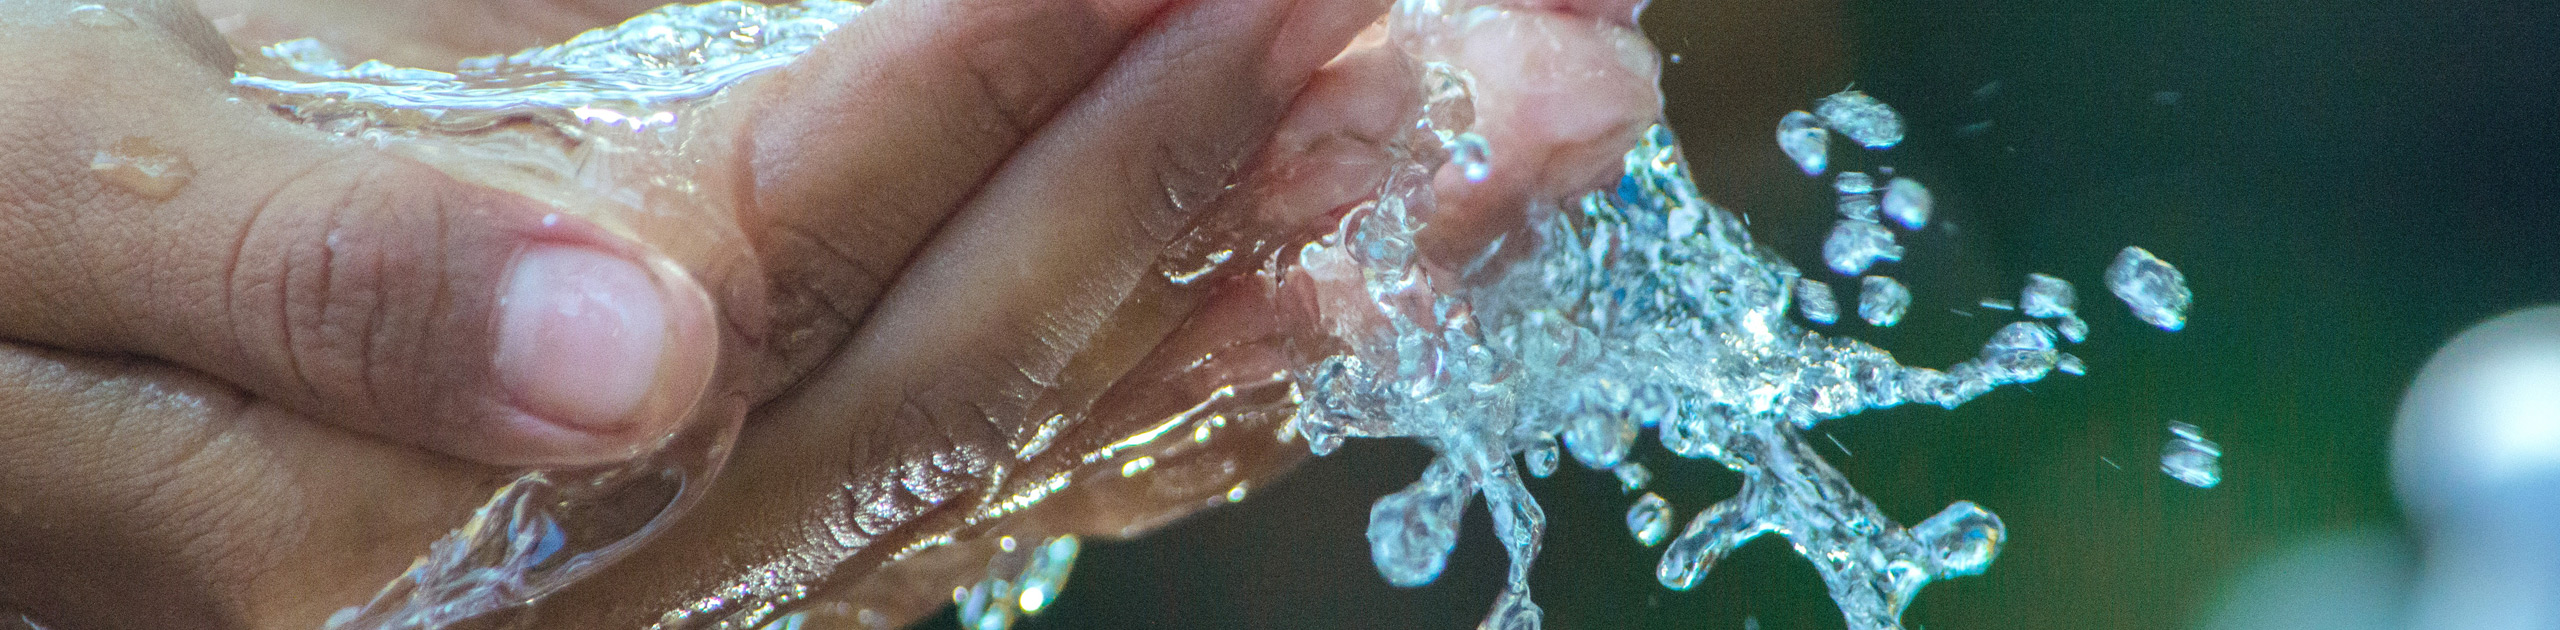 Zwei ineinandergelegte Hände fangen Wasser auf, Foto: Pixabay